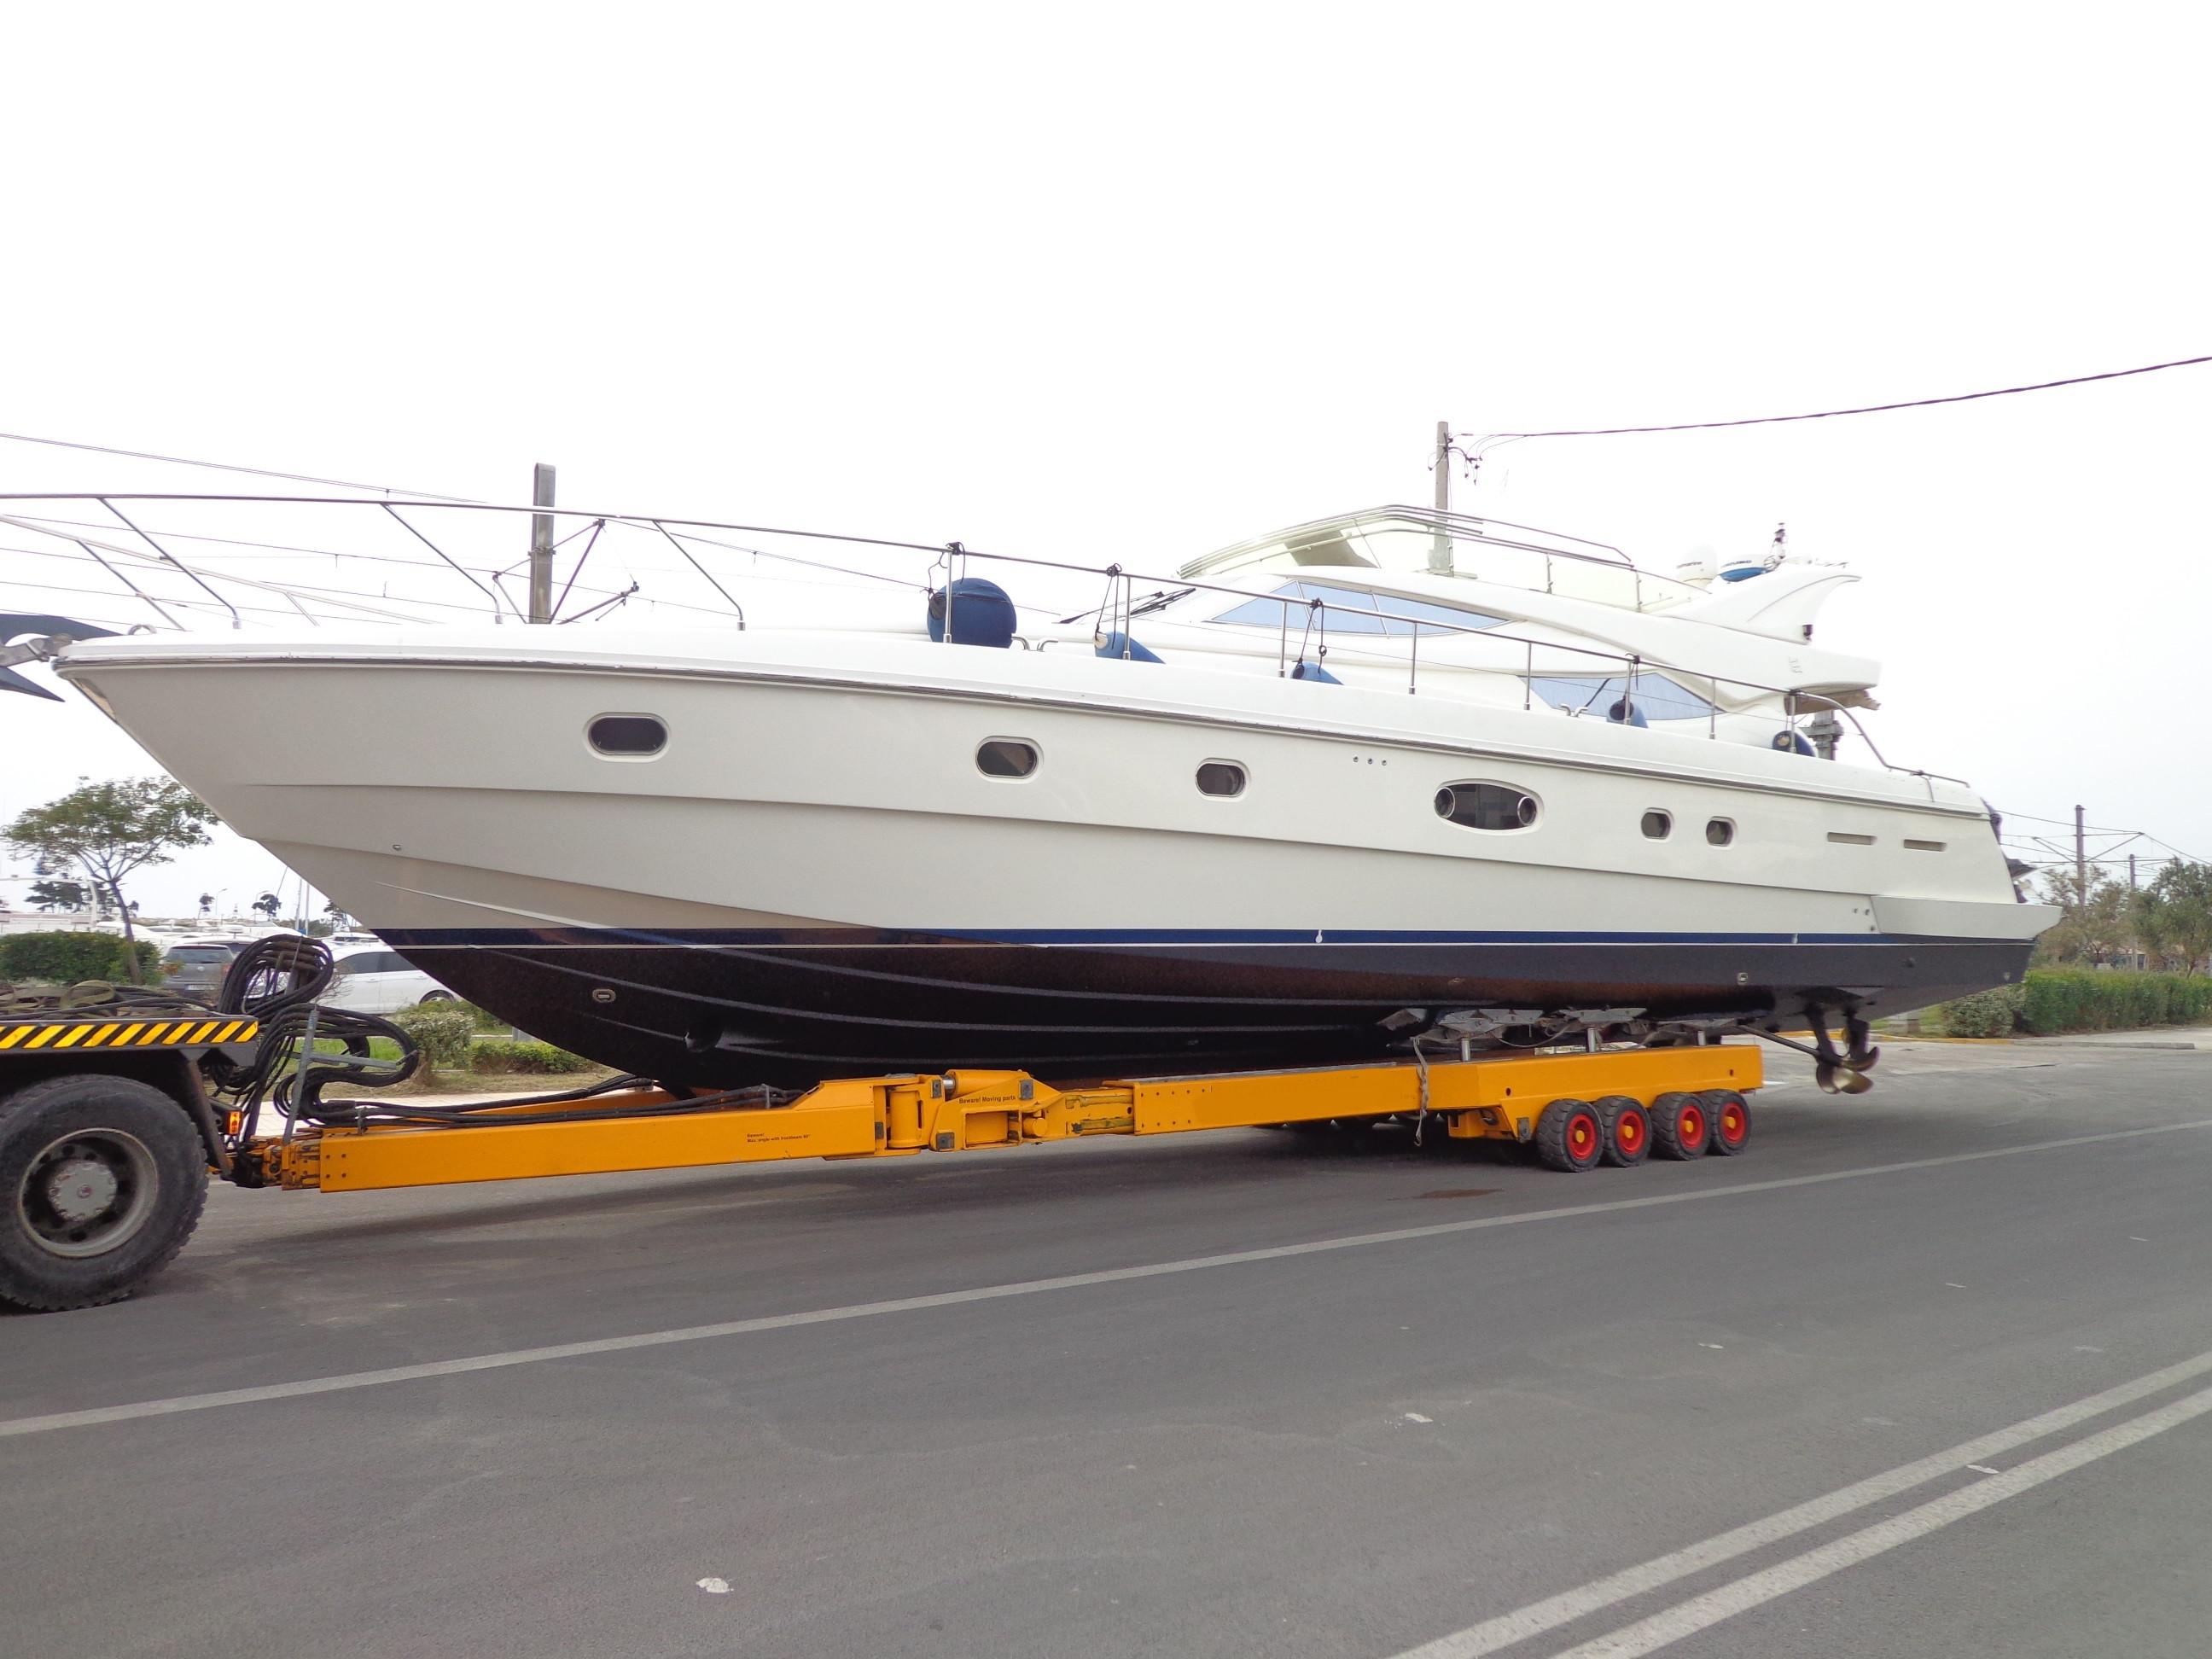 2003 Ferretti Yachts 620 "TURN KEY" Condition